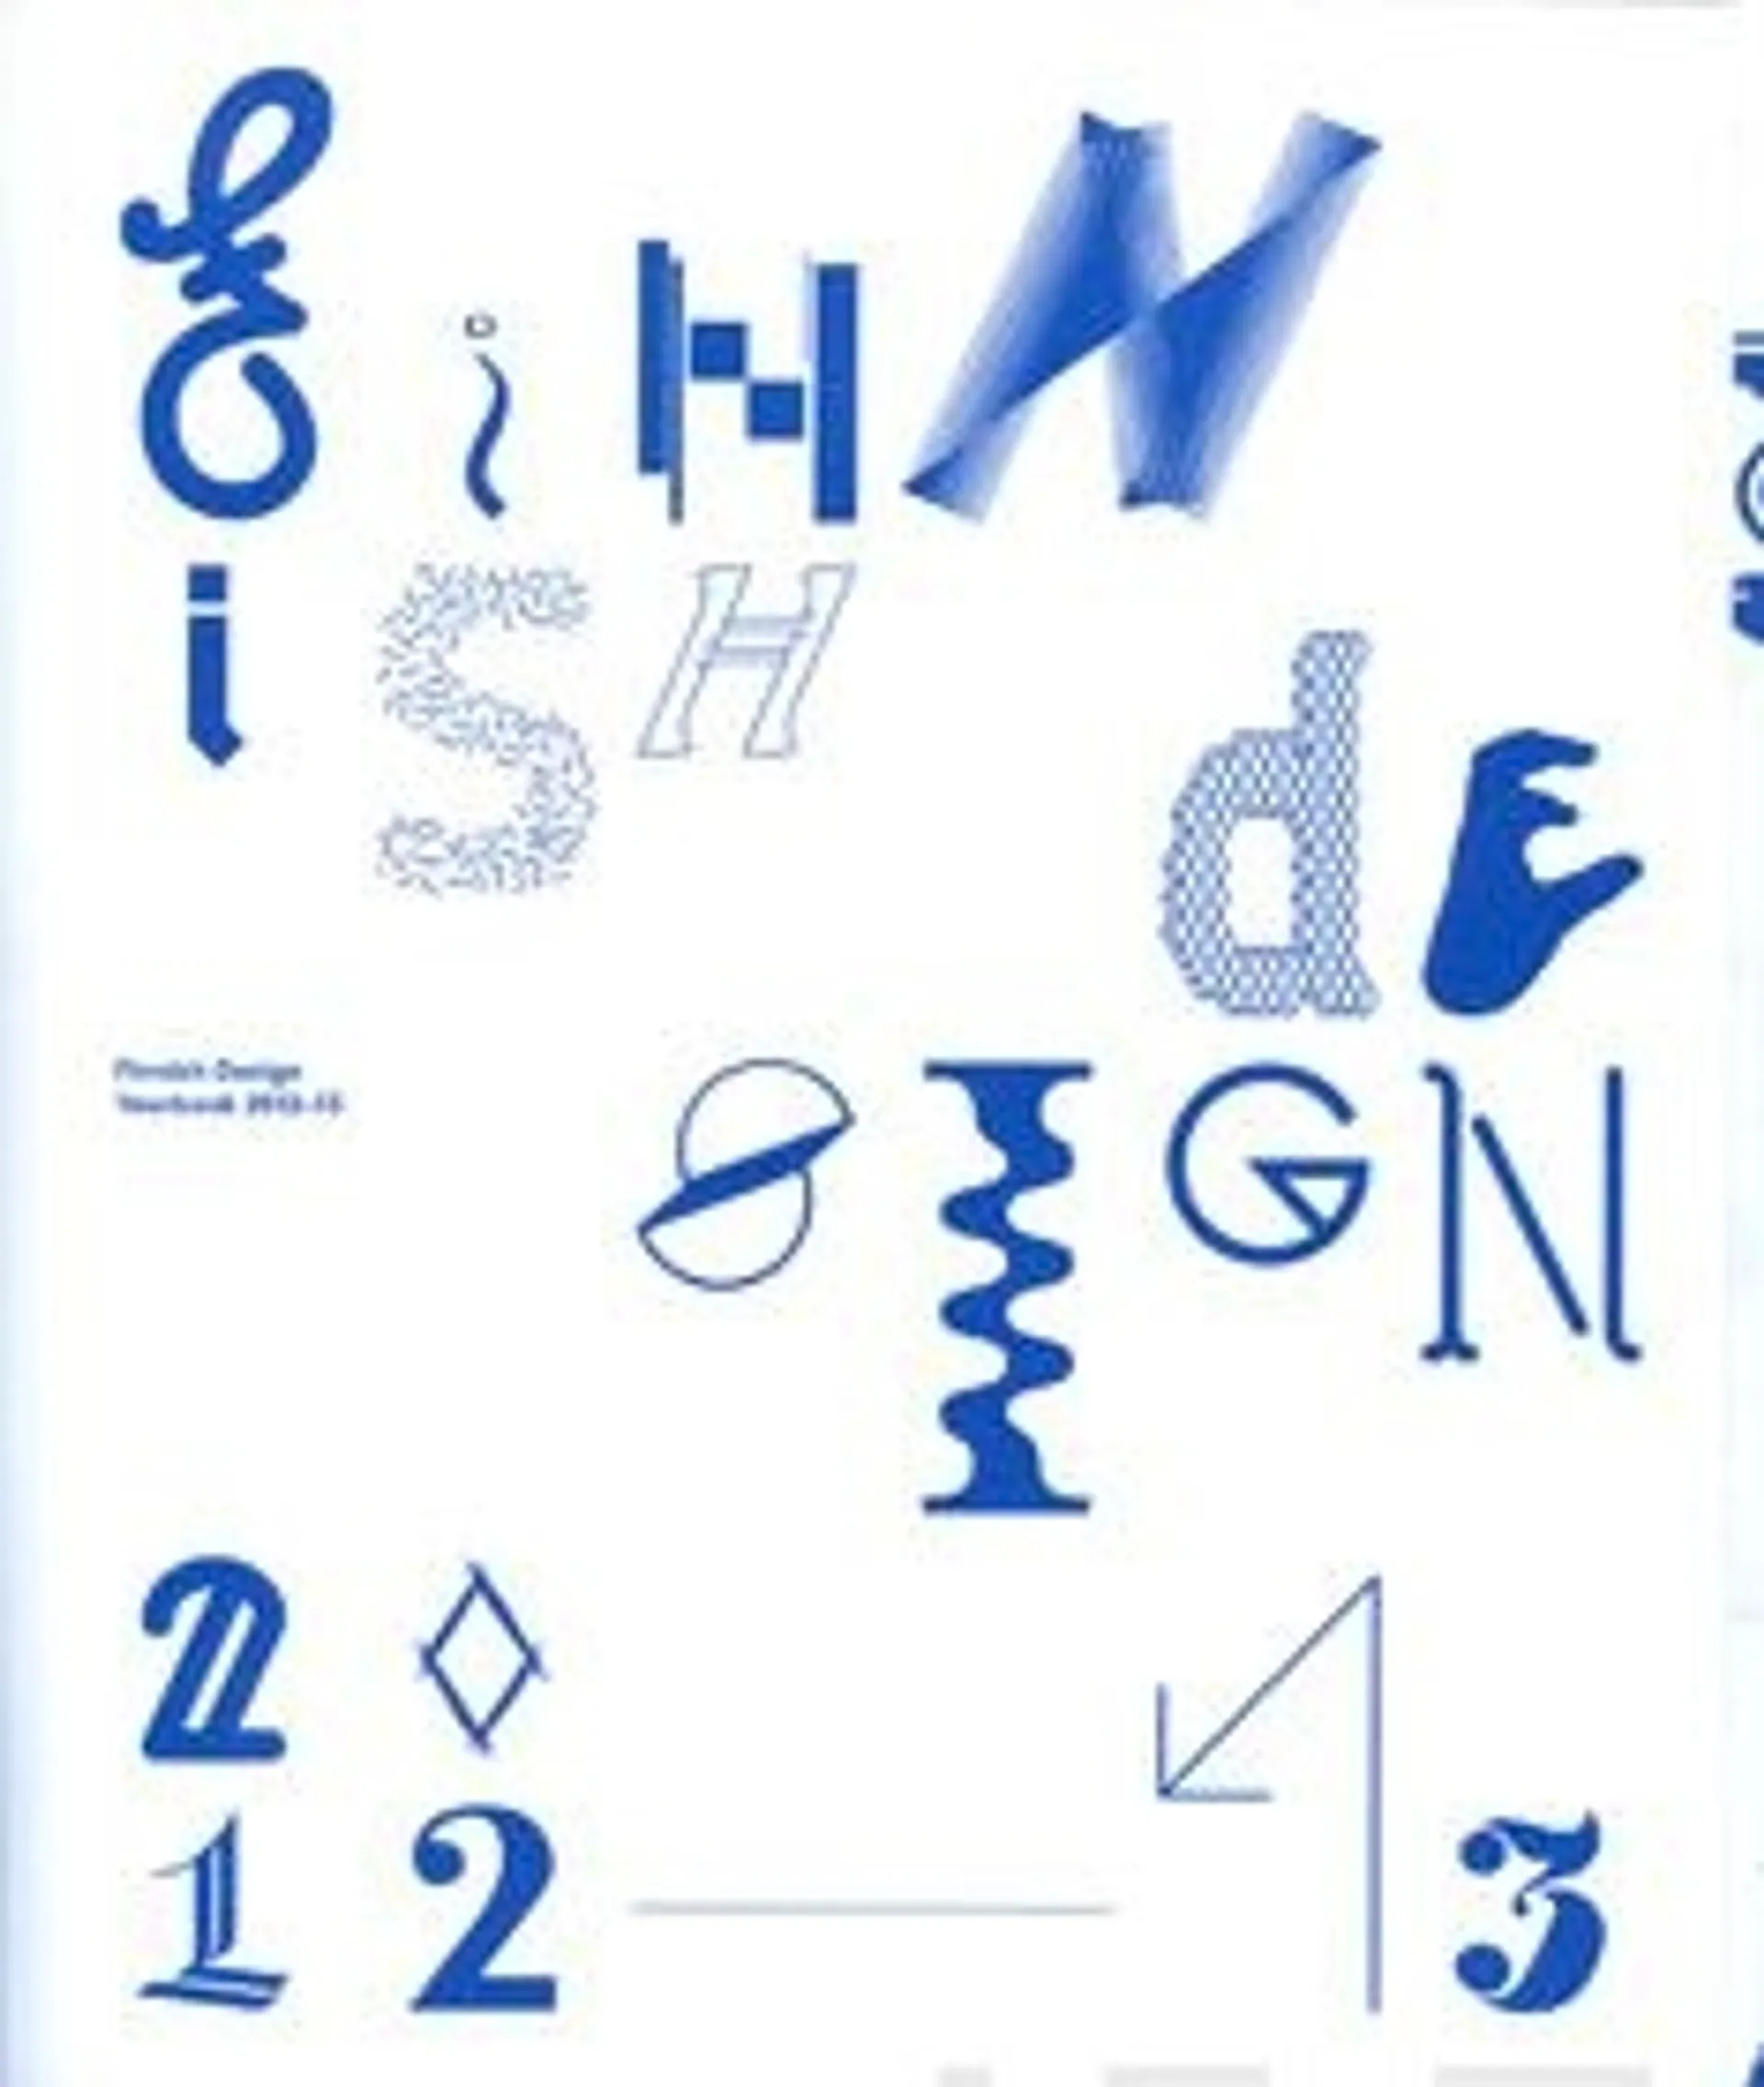 Valkola, Finnish design yearbook 2012-13